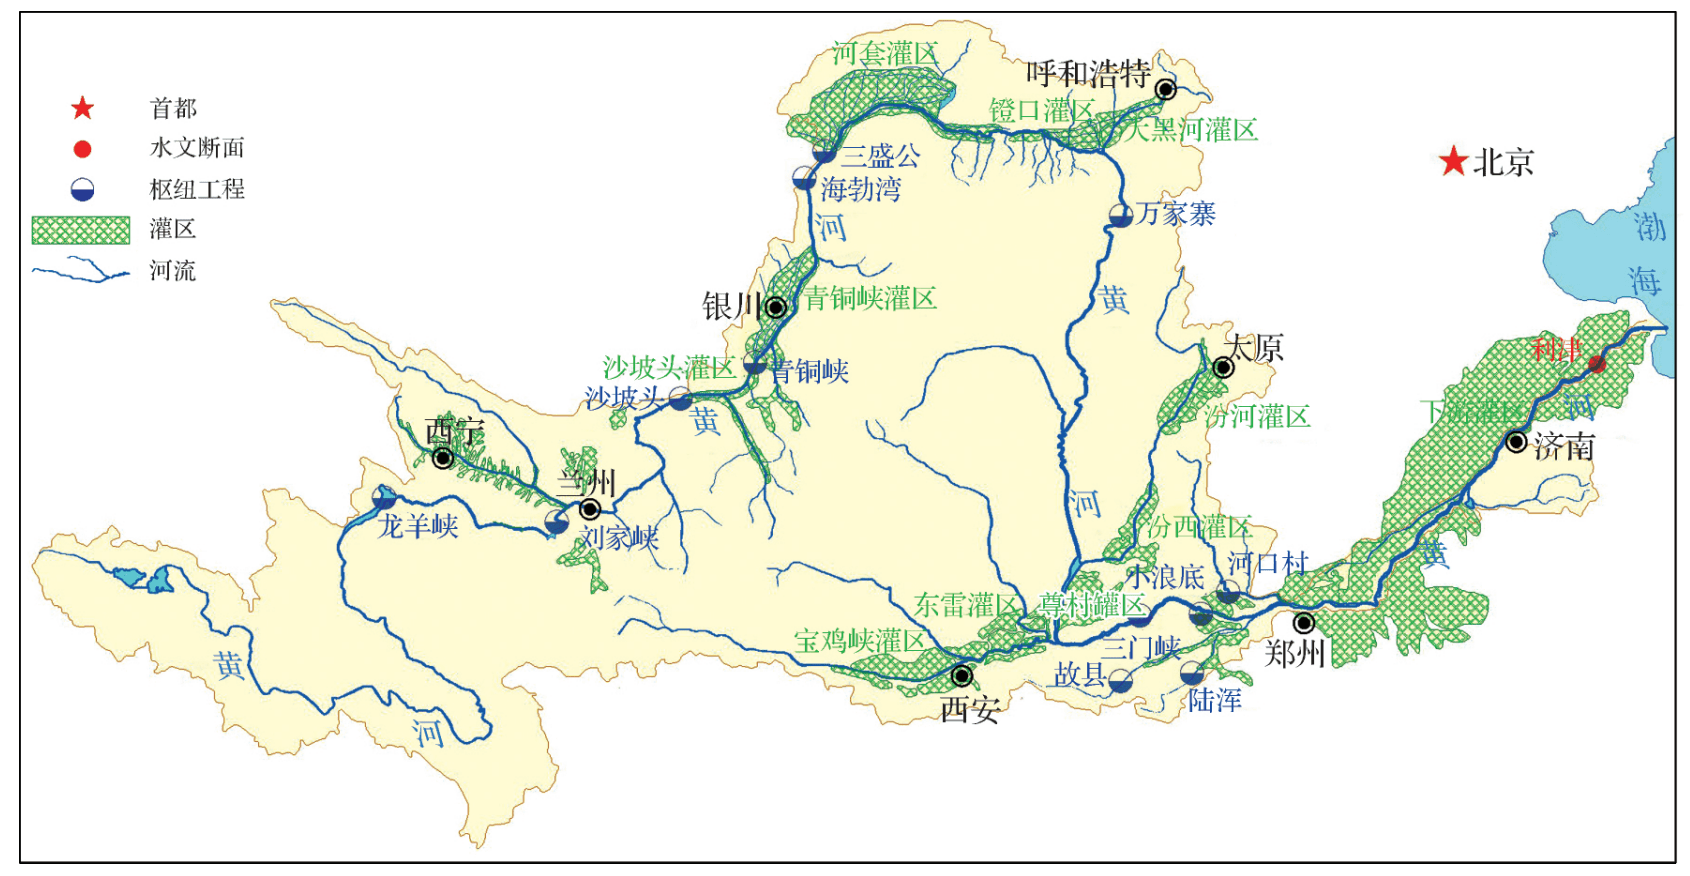 黄河是中国第二长河水量却不及长江的110水少的原因是什么